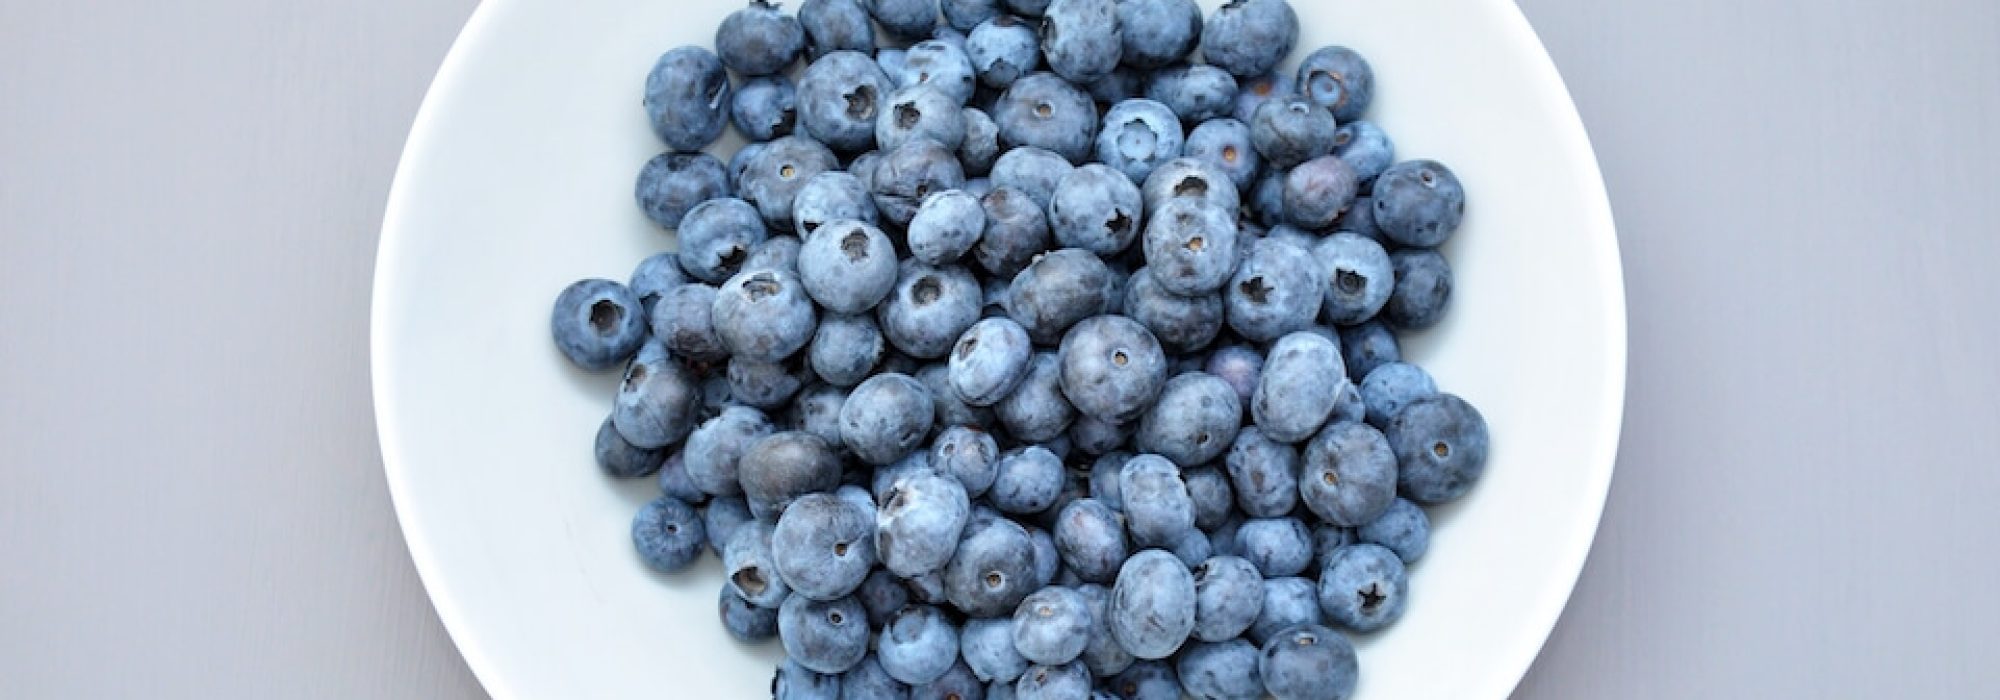 frozen berries health benefits